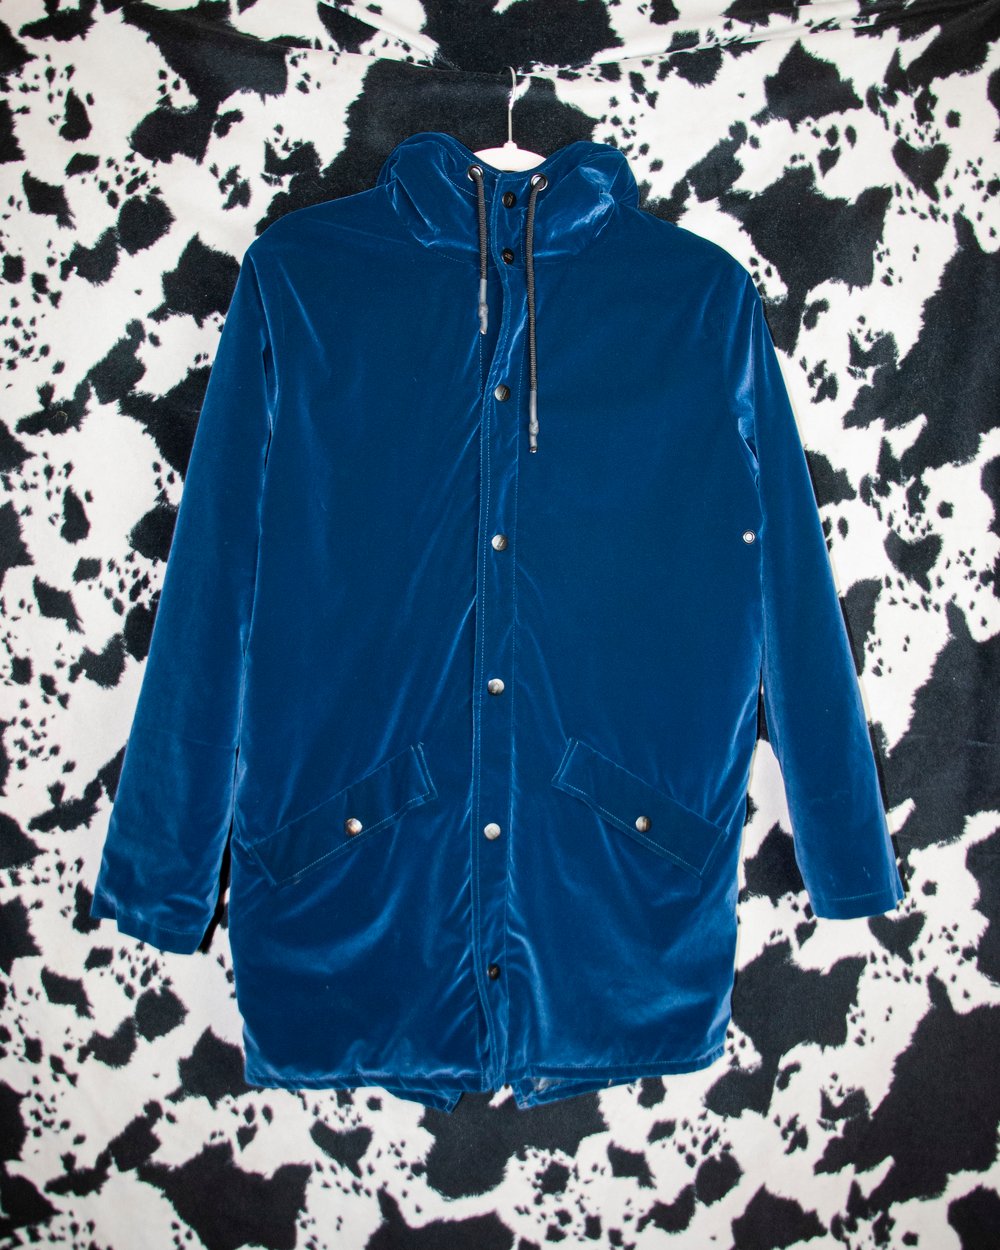 GYPSY CAT blue velvet raincoat